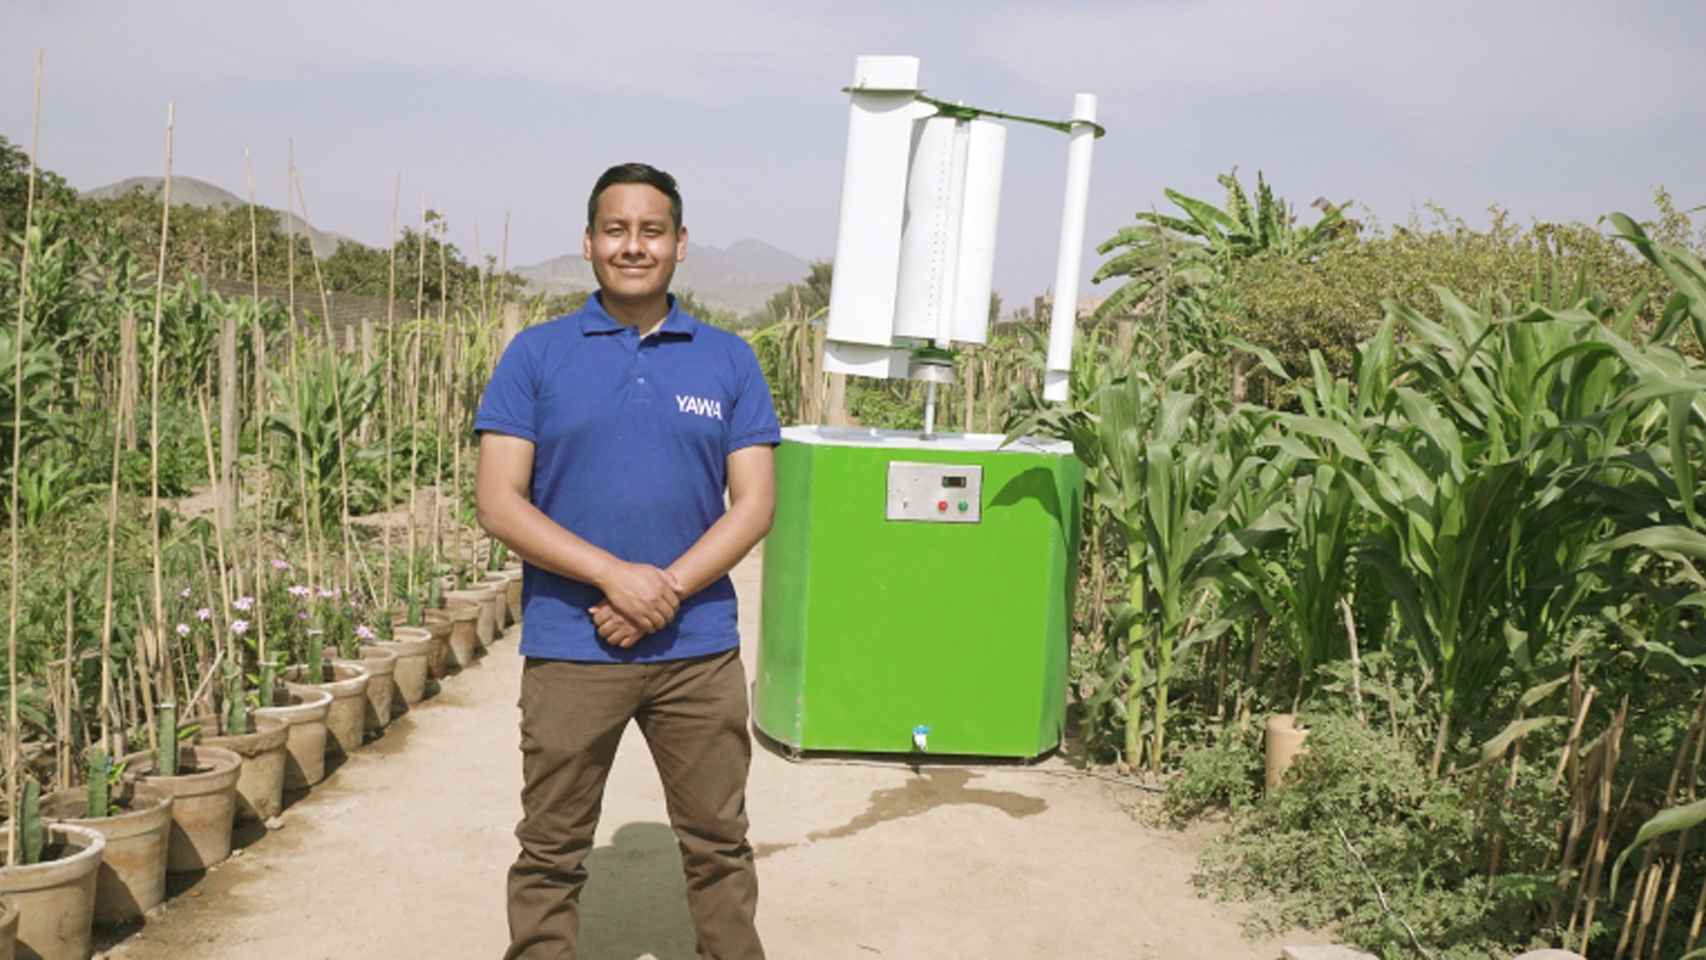 Max Hidalgo junto a las turbinas portátiles recolectoras del agua ganadoras el premio Campeones de la Tierra 2020.